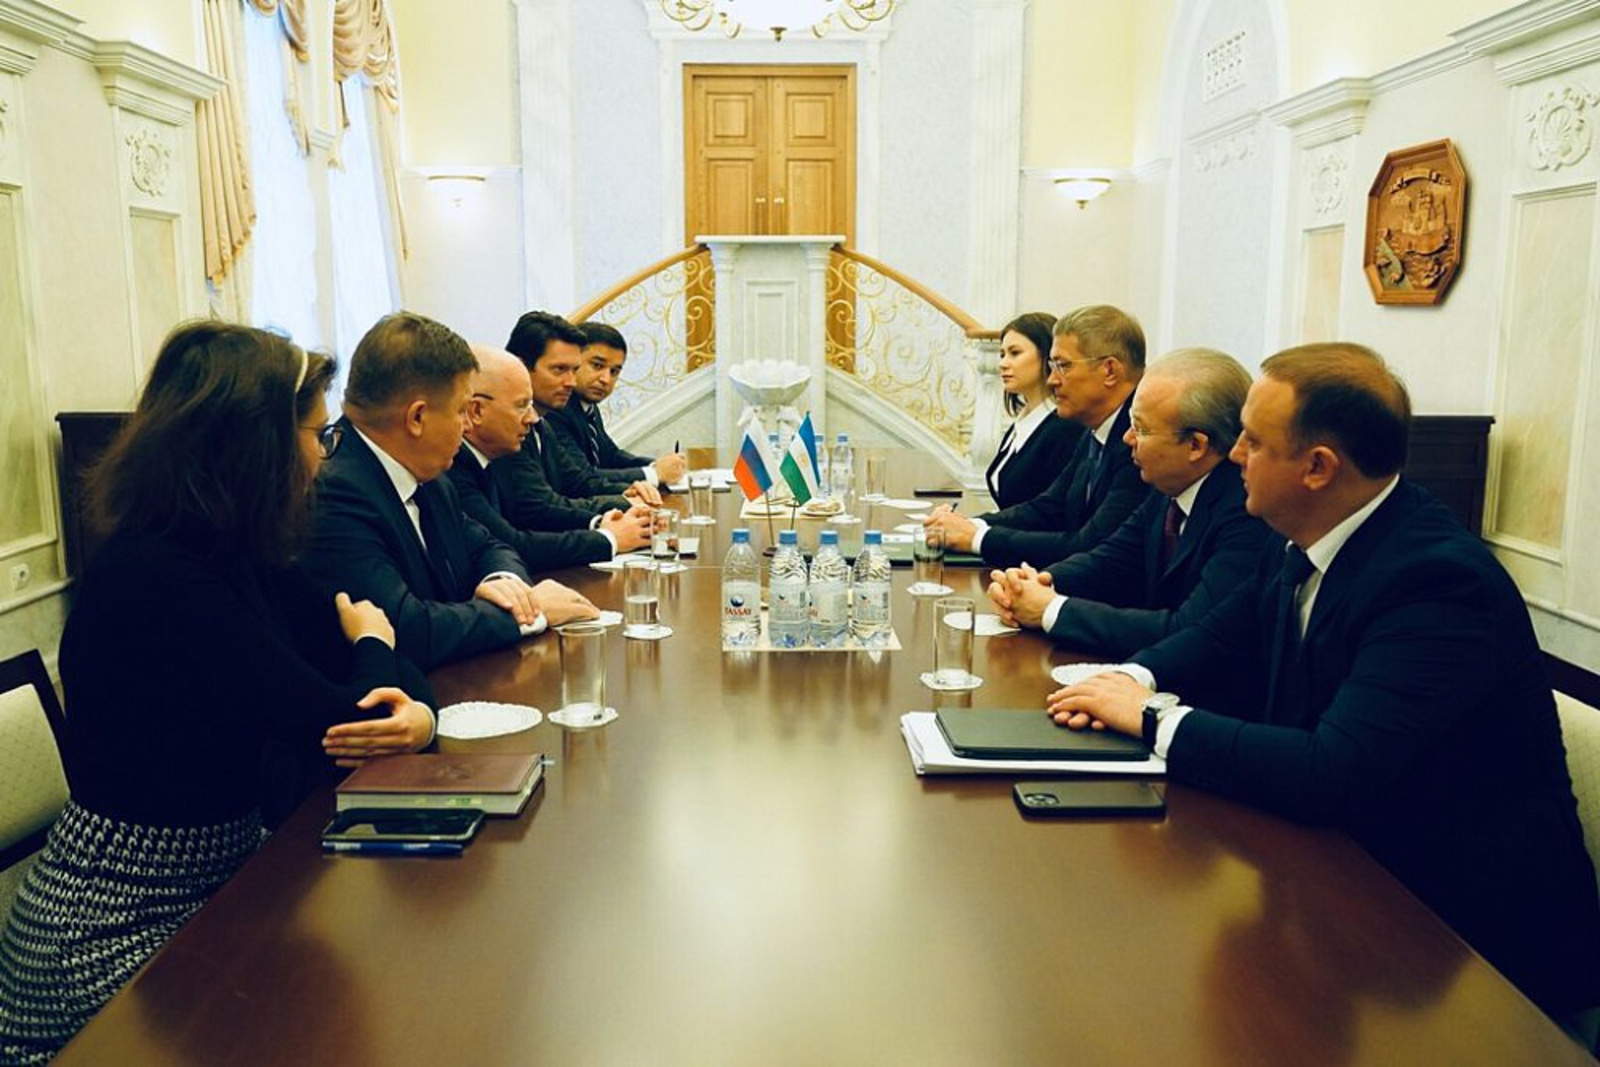 Глава Башкортостана Радий Хабиров встретился с временным поверенным в делах Посольства России в Казахстане Александром Комаровым.